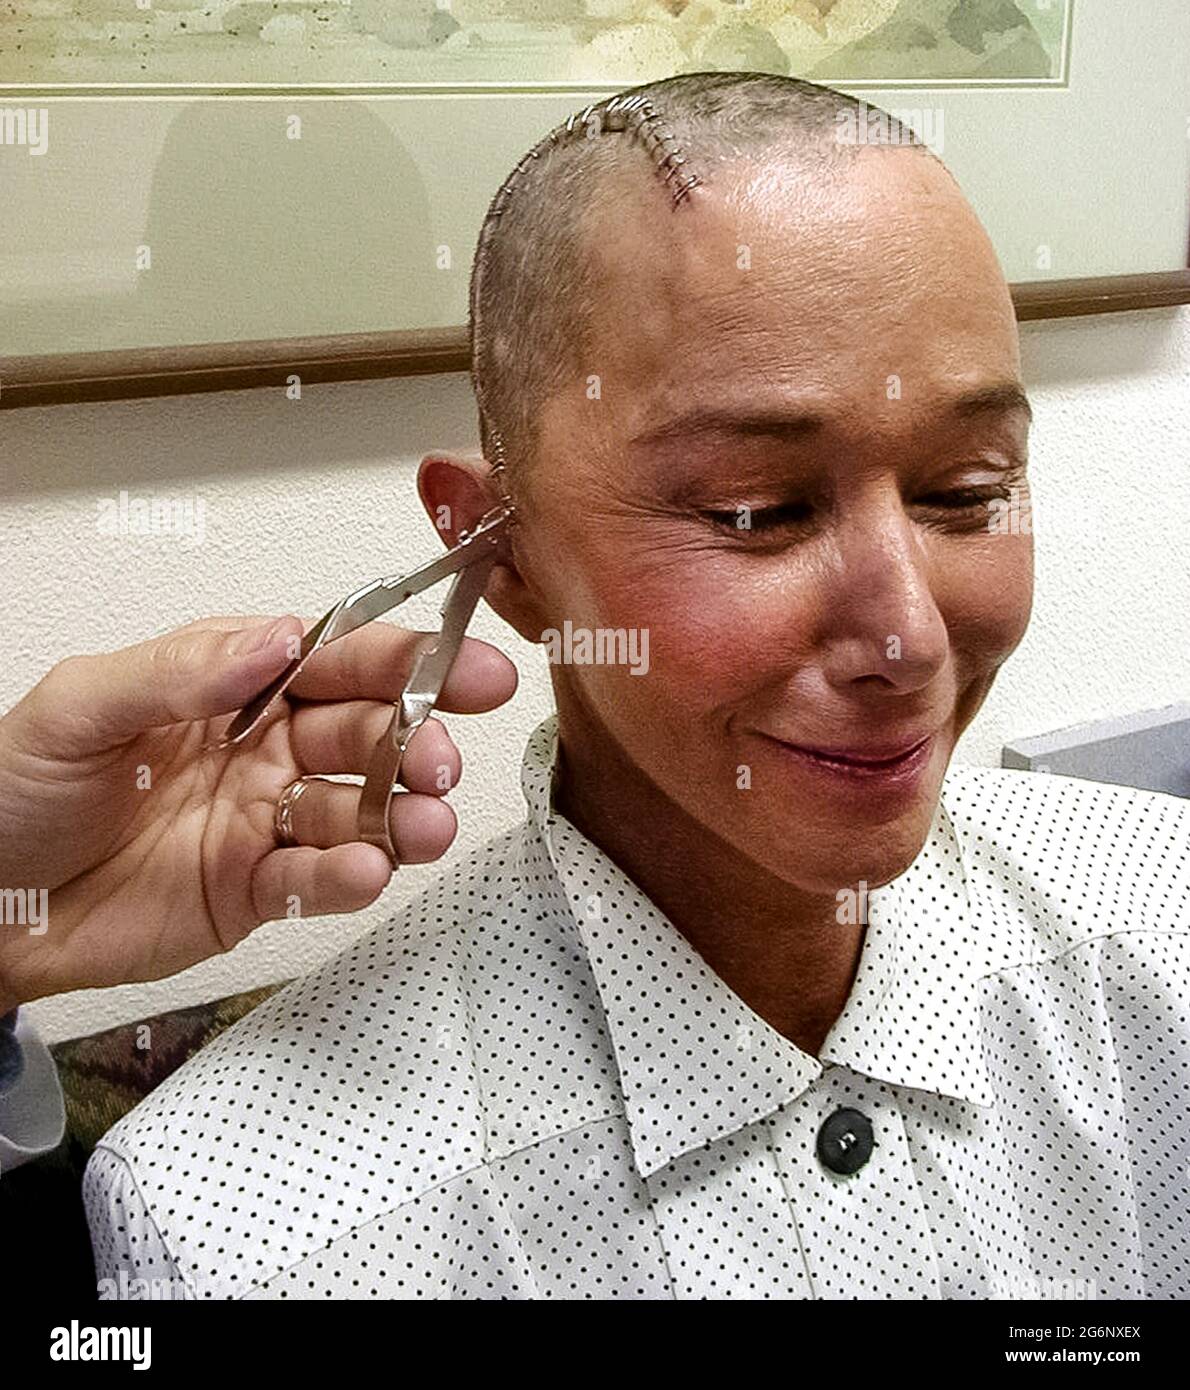 Una donna americana che ha sofferto di epilessia sorride mentre i suoi capelli si riproducono e un medico rimuove le graffette in acciaio inossidabile che sono state usate per chiudere una grande incisione nella sua testa dopo un'operazione sul suo cervello. I suoi capelli sono stati rasati prima che il chirurgo tagliato nel suo cuoio capelluto e cranio (cranio) per eseguire una lobectomia temporale, un intervento chirurgico che può abbassare il numero di convulsioni, renderle meno gravi, o addirittura impedire loro di accadere. Durante questa procedura medica, il medico ha rimosso parte del lobo temporale del suo cervello dove la maggior parte delle crisi iniziano. (5° di 7 immagini correlate). Modello rilasciato. Foto Stock